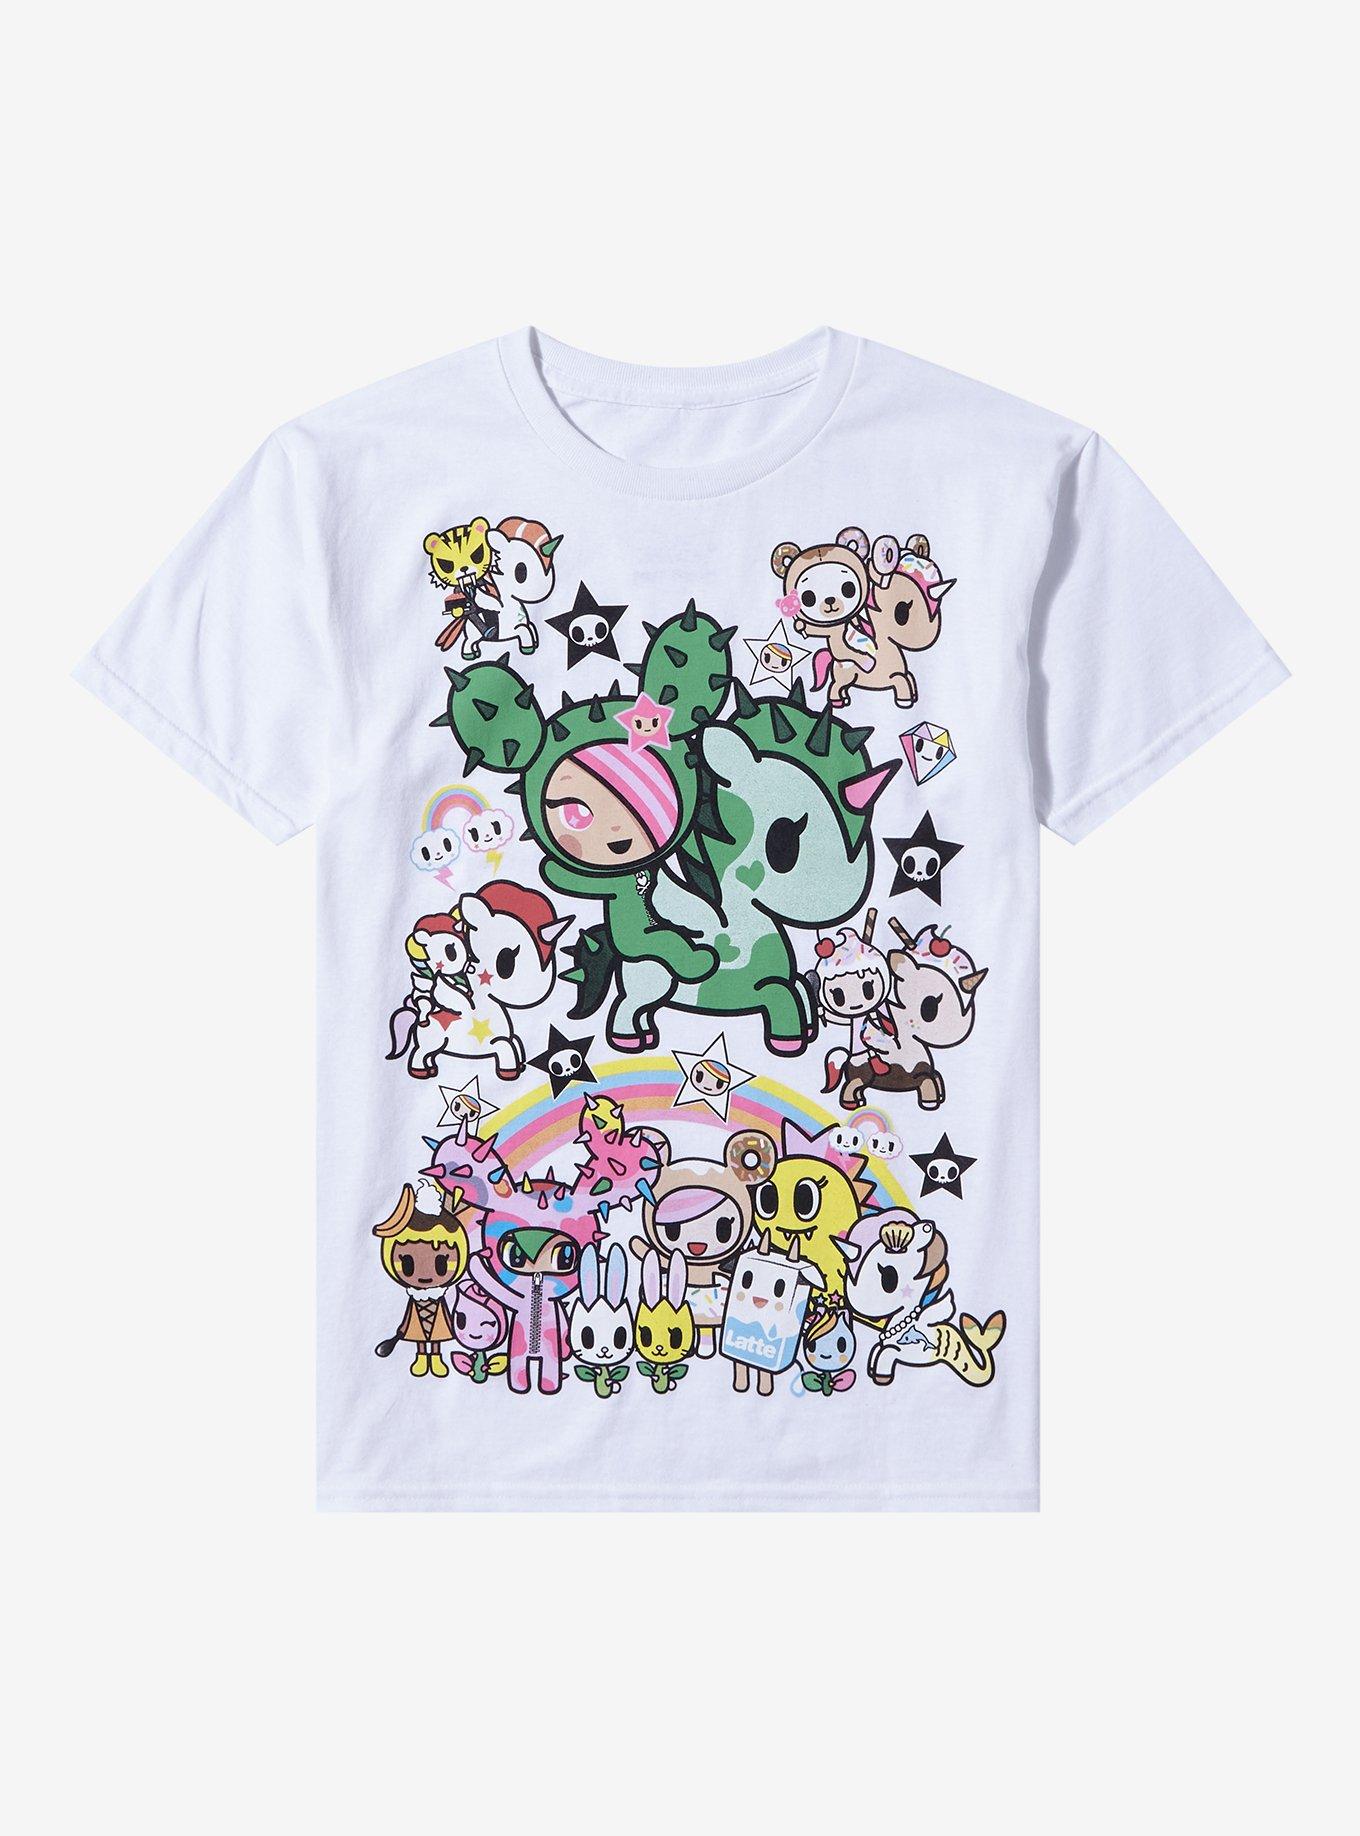 Tokidoki Characters Jumbo Graphic Girls T-Shirt